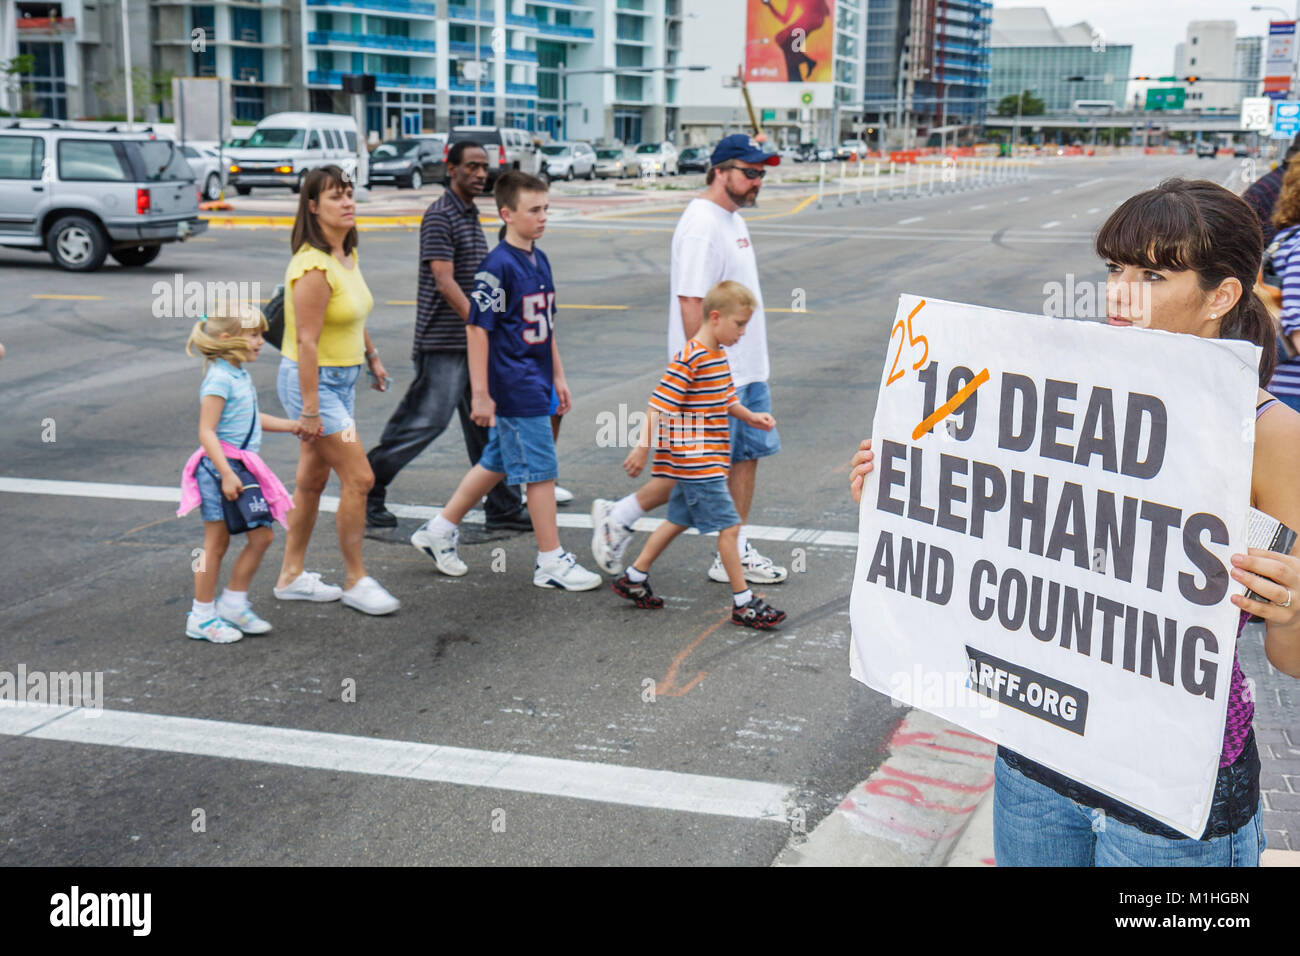 Miami Florida,Biscayne Boulevard,American Airlines Arena,protesta por abuso de elefantes,derechos de animales,mujeres femeninas,carteles,letreros,padres de familia Foto de stock